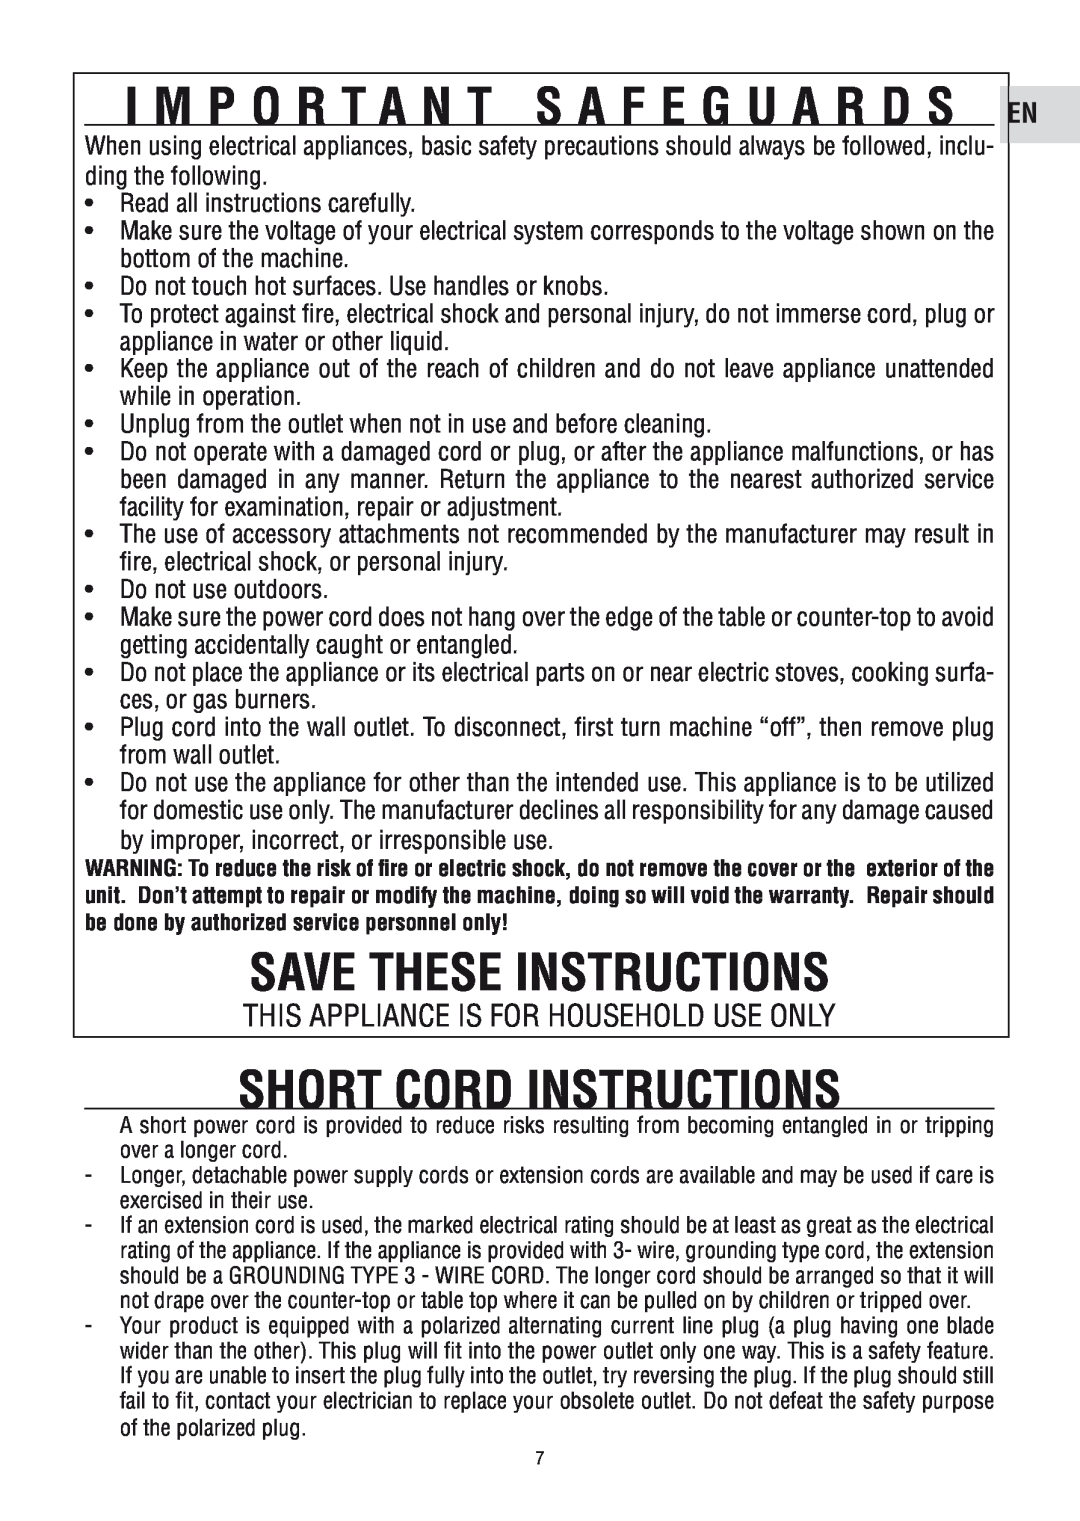 DeLonghi ECAM23450 SL manual Save These Instructions, short cord instructions, I M P O R T A N T S A F E G U A R D S En 